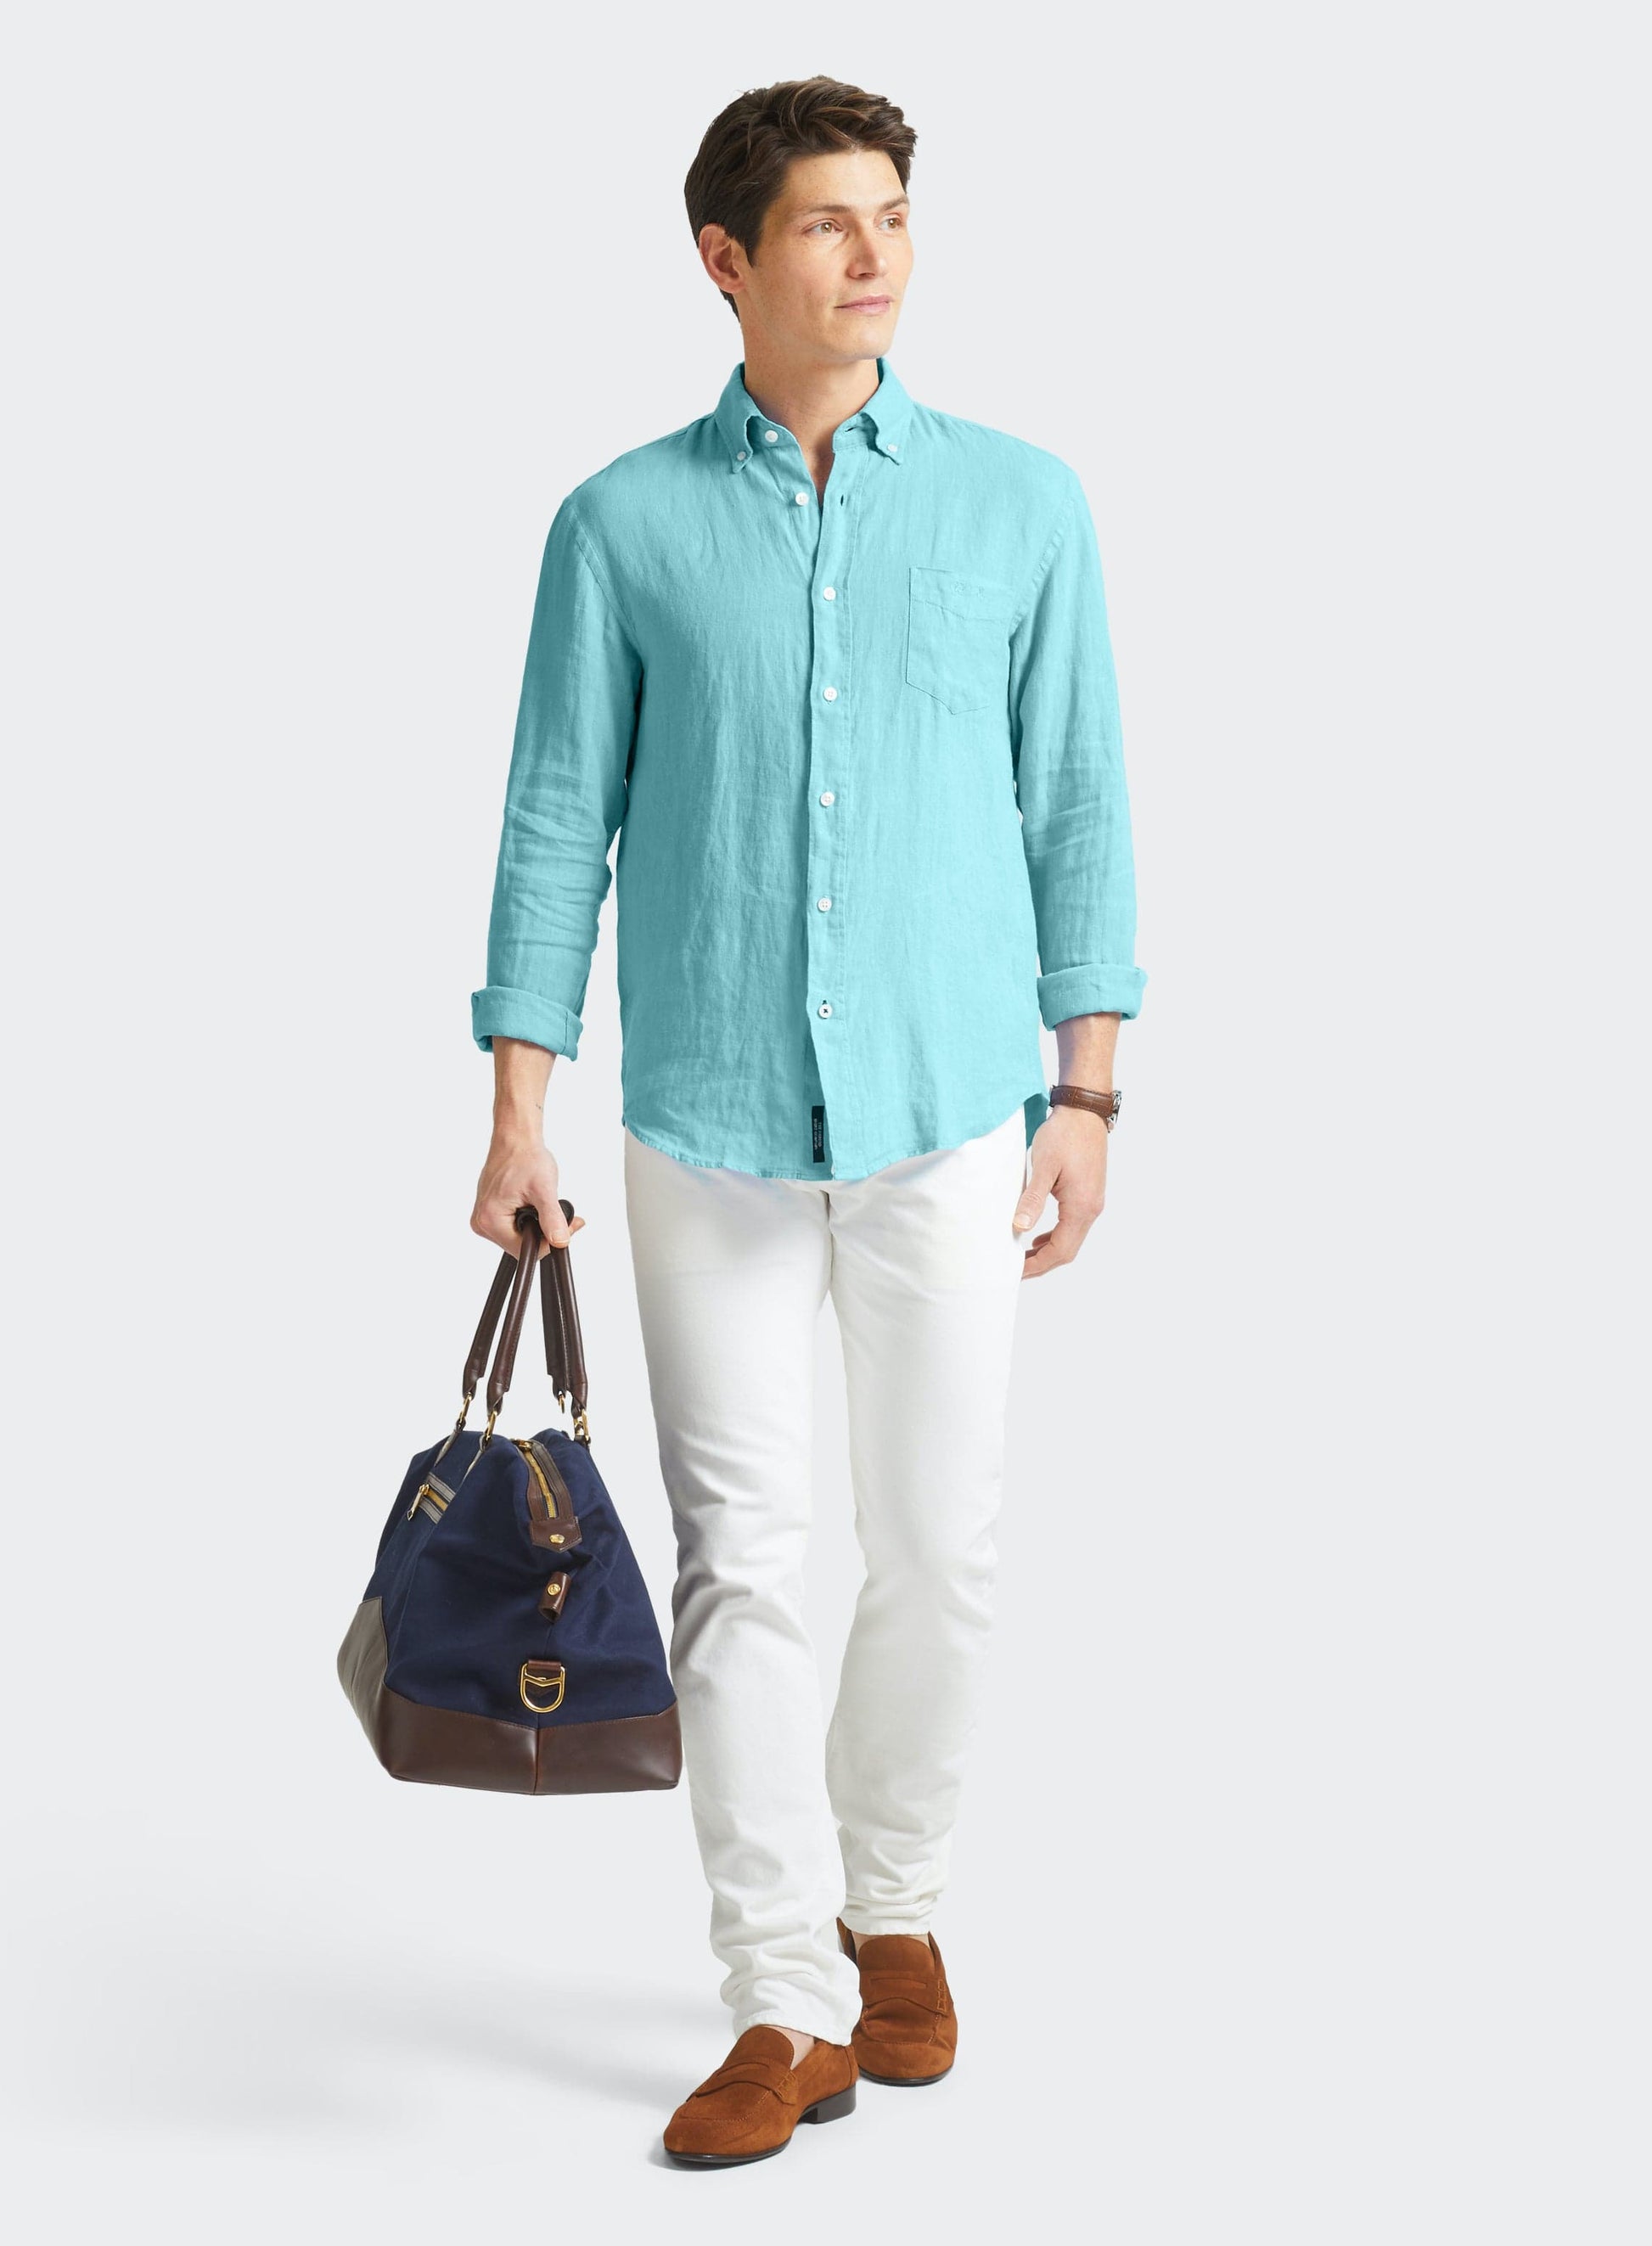 Classic Fit Linen Shirt in Aqua